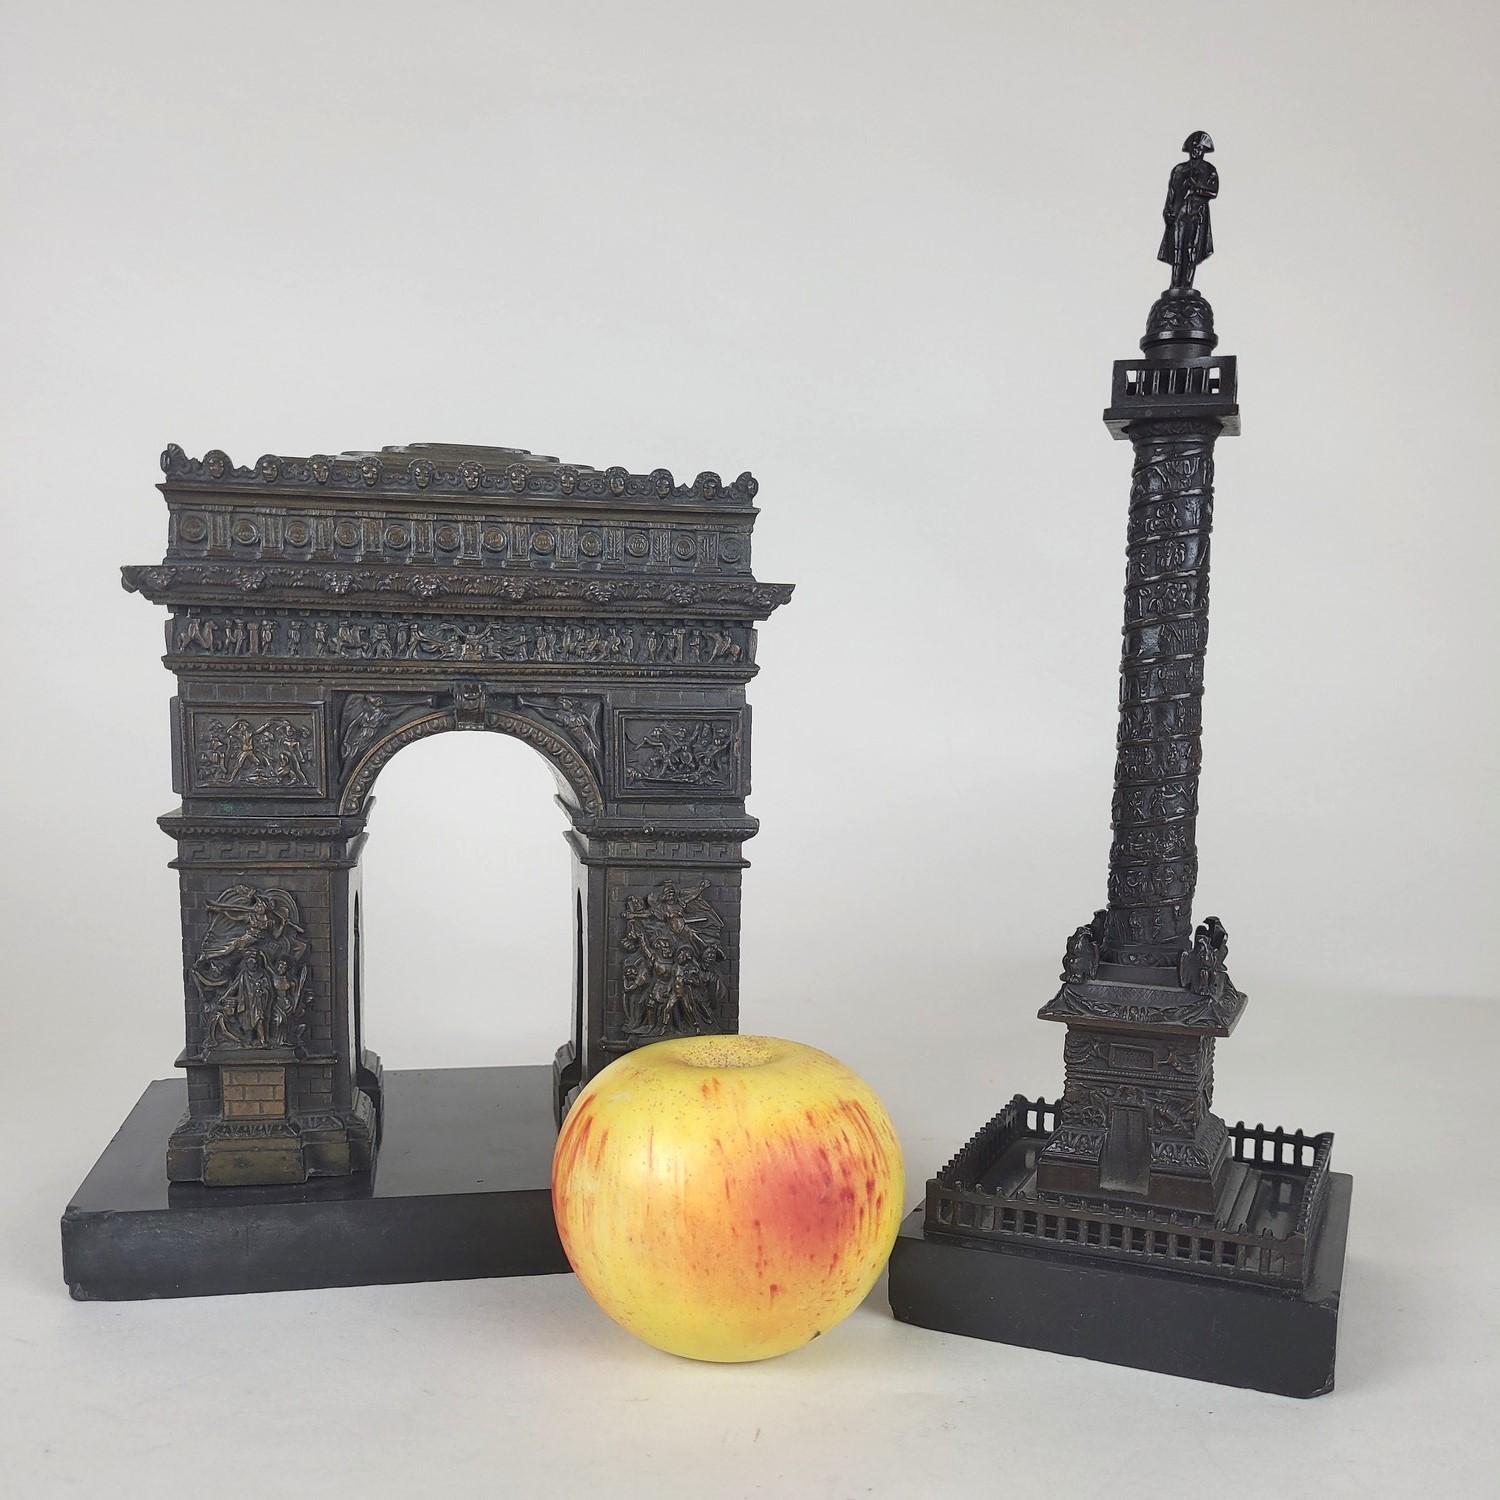 Réduction en bronze à patine brune, sur socle en marbre noir, de 2 des monuments les plus emblématiques de Paris : Arc de Triomphe et Colonne Vendôme

L'Arc de Triomphe a été construit à l'initiative de Napoléon I+I, après la victoire d'Austerlitz,